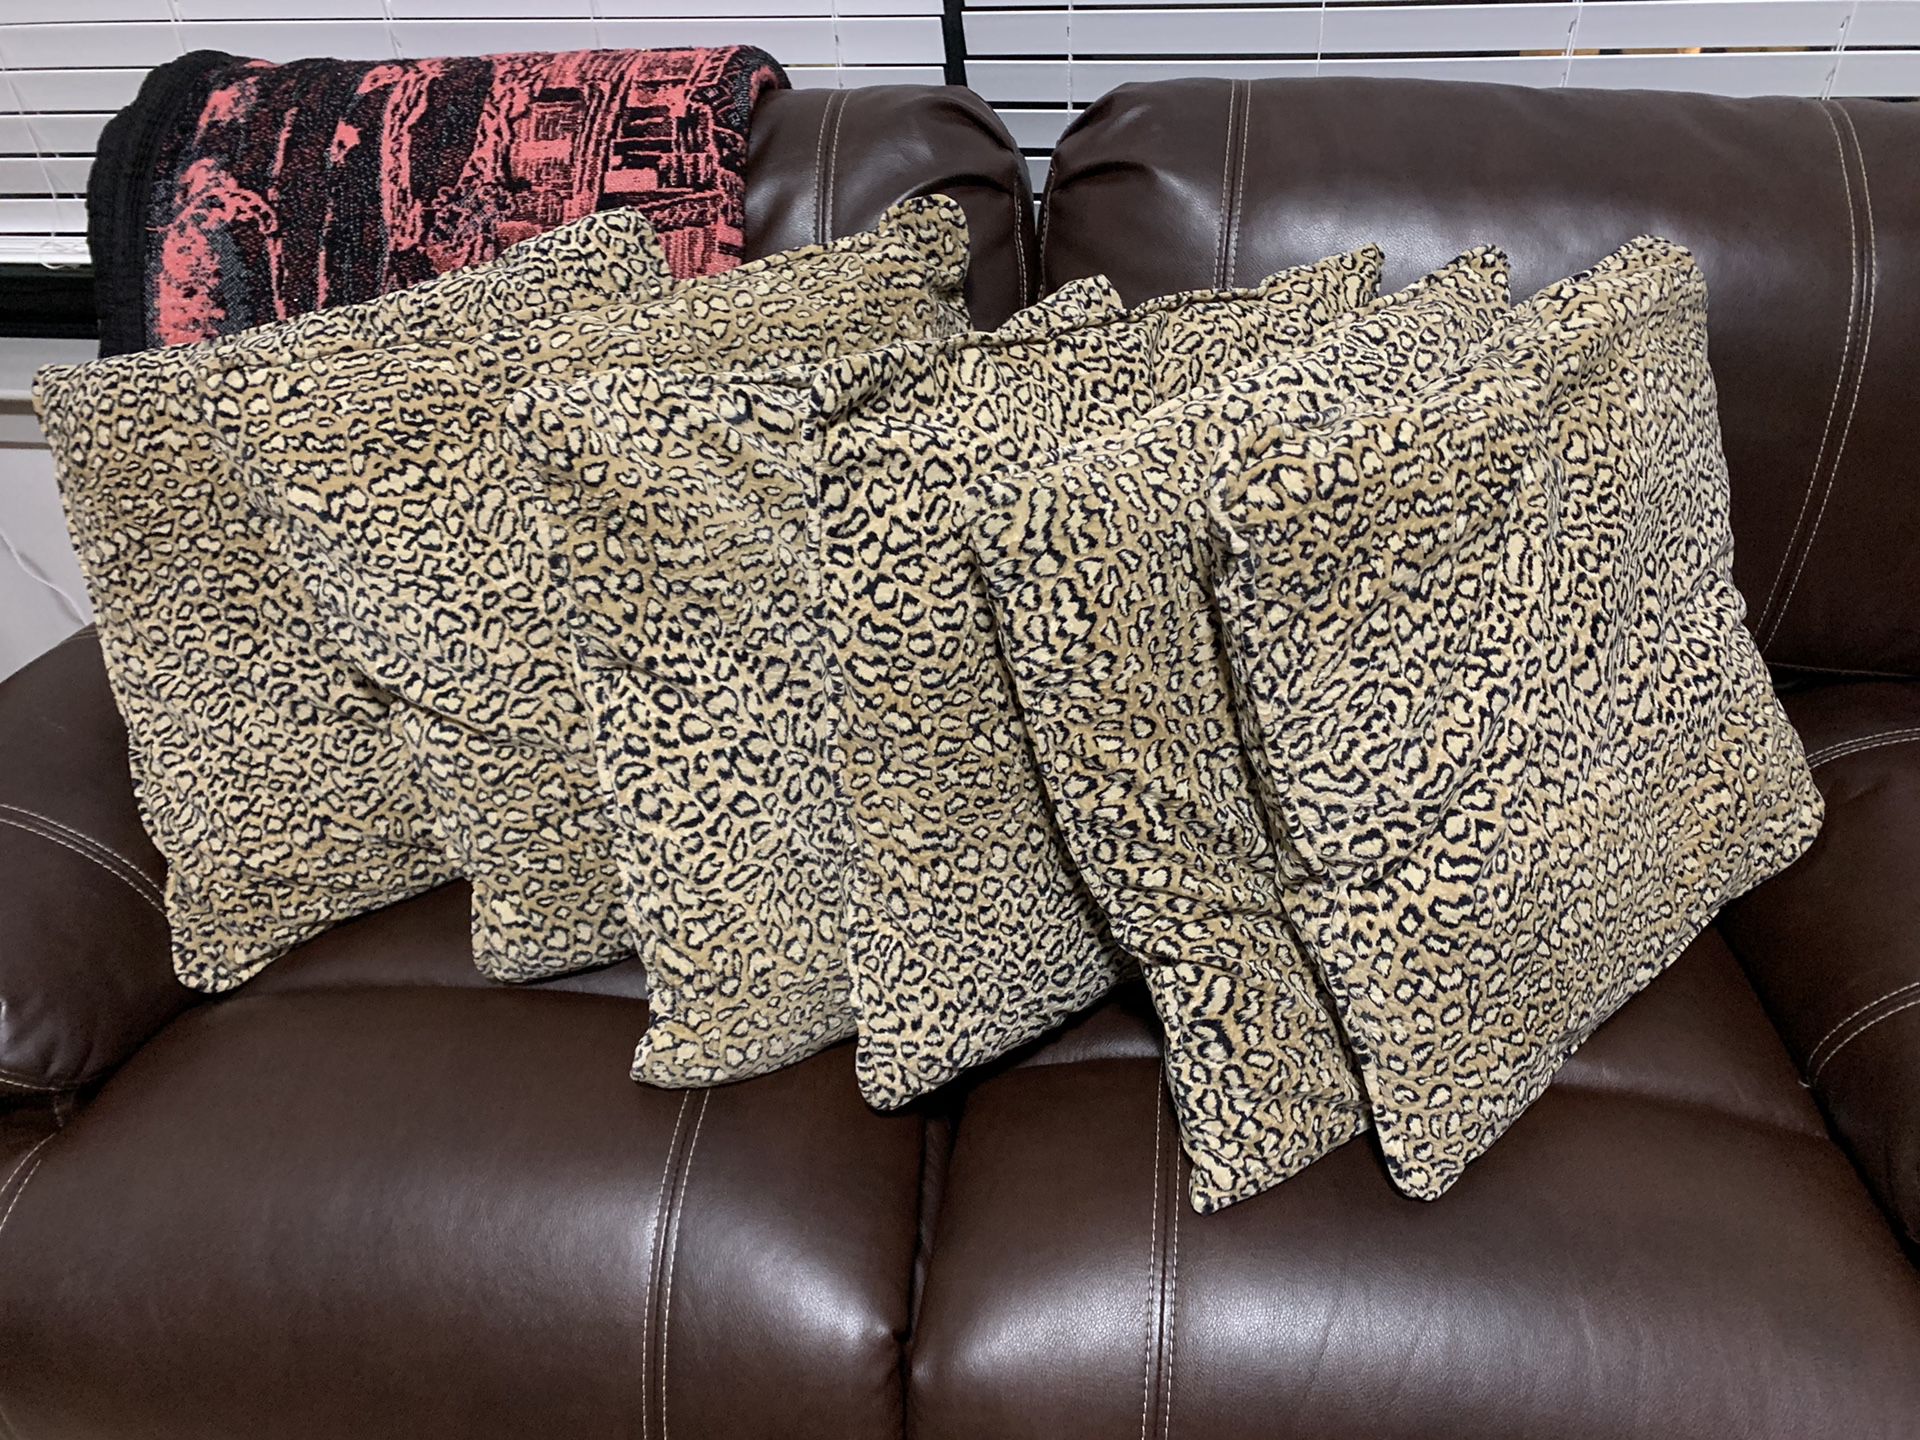 Leopard throw pillows 6x